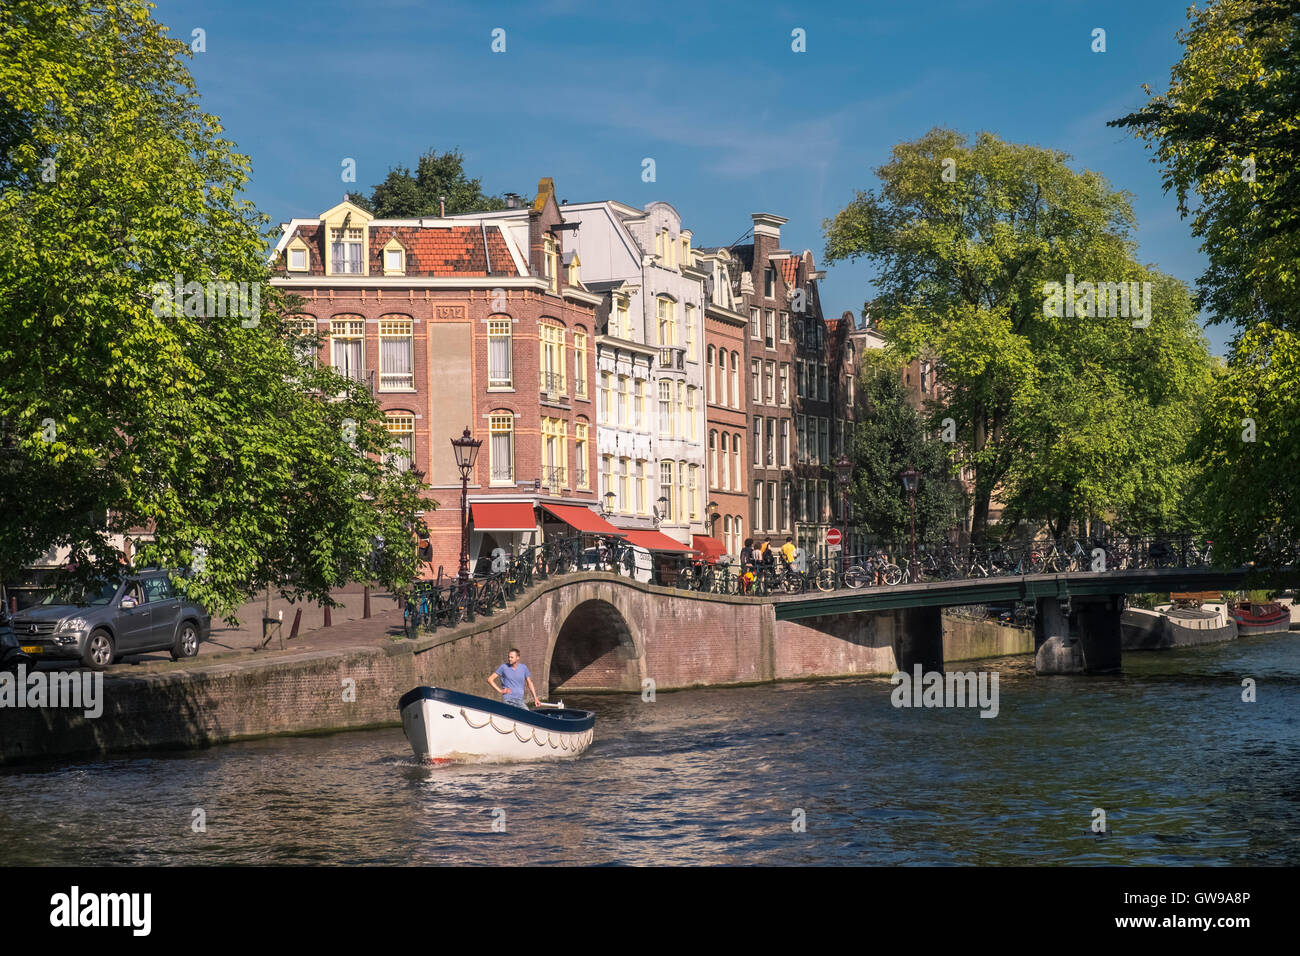 Petit bateau sur canal Prinsengracht, Amsterdam, Pays-Bas. Banque D'Images